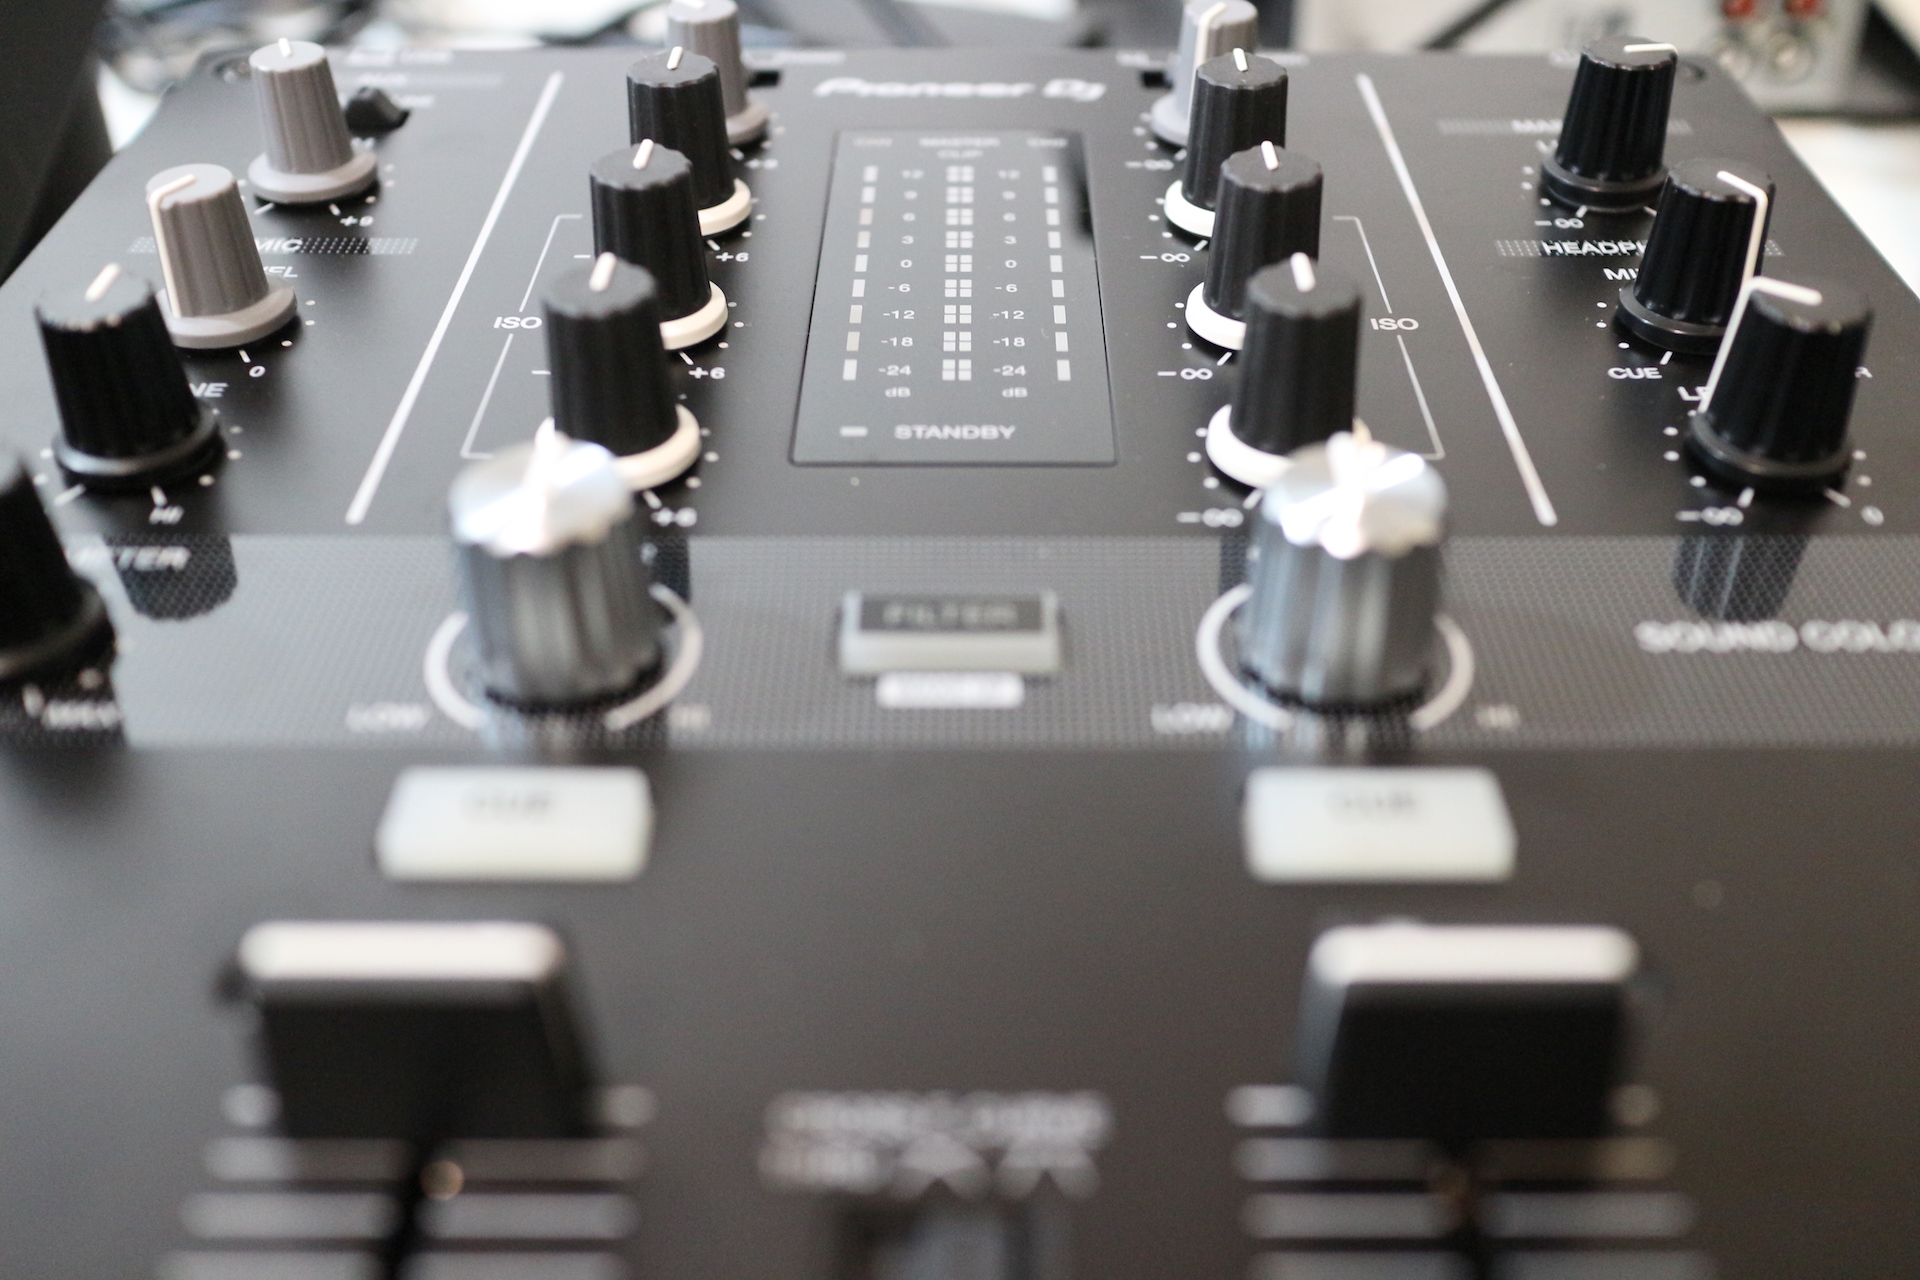 Mesa de mezclas de 2 canales Pioneer DJ DJM-250MK2